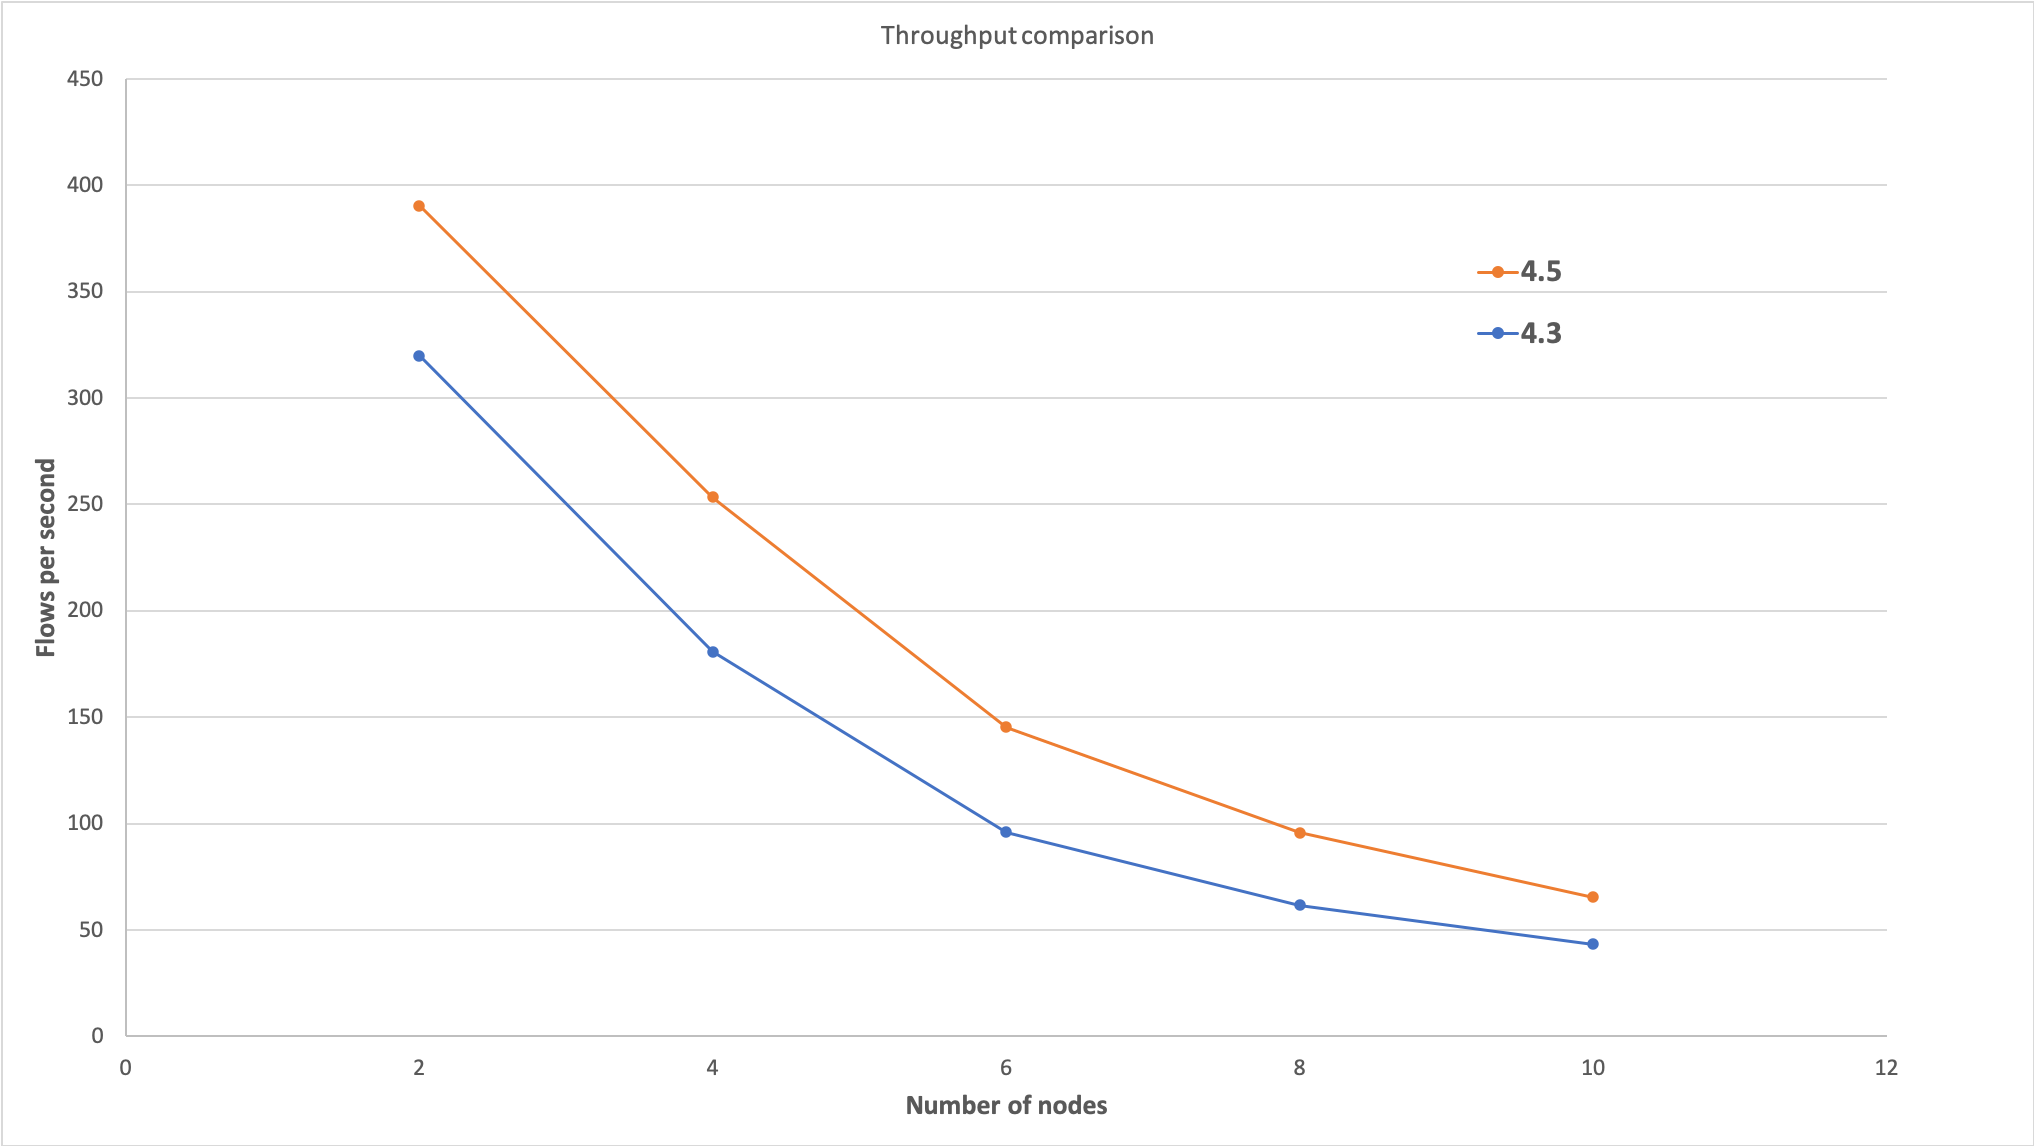 CE 4.3/4.5 throughput comparison chart